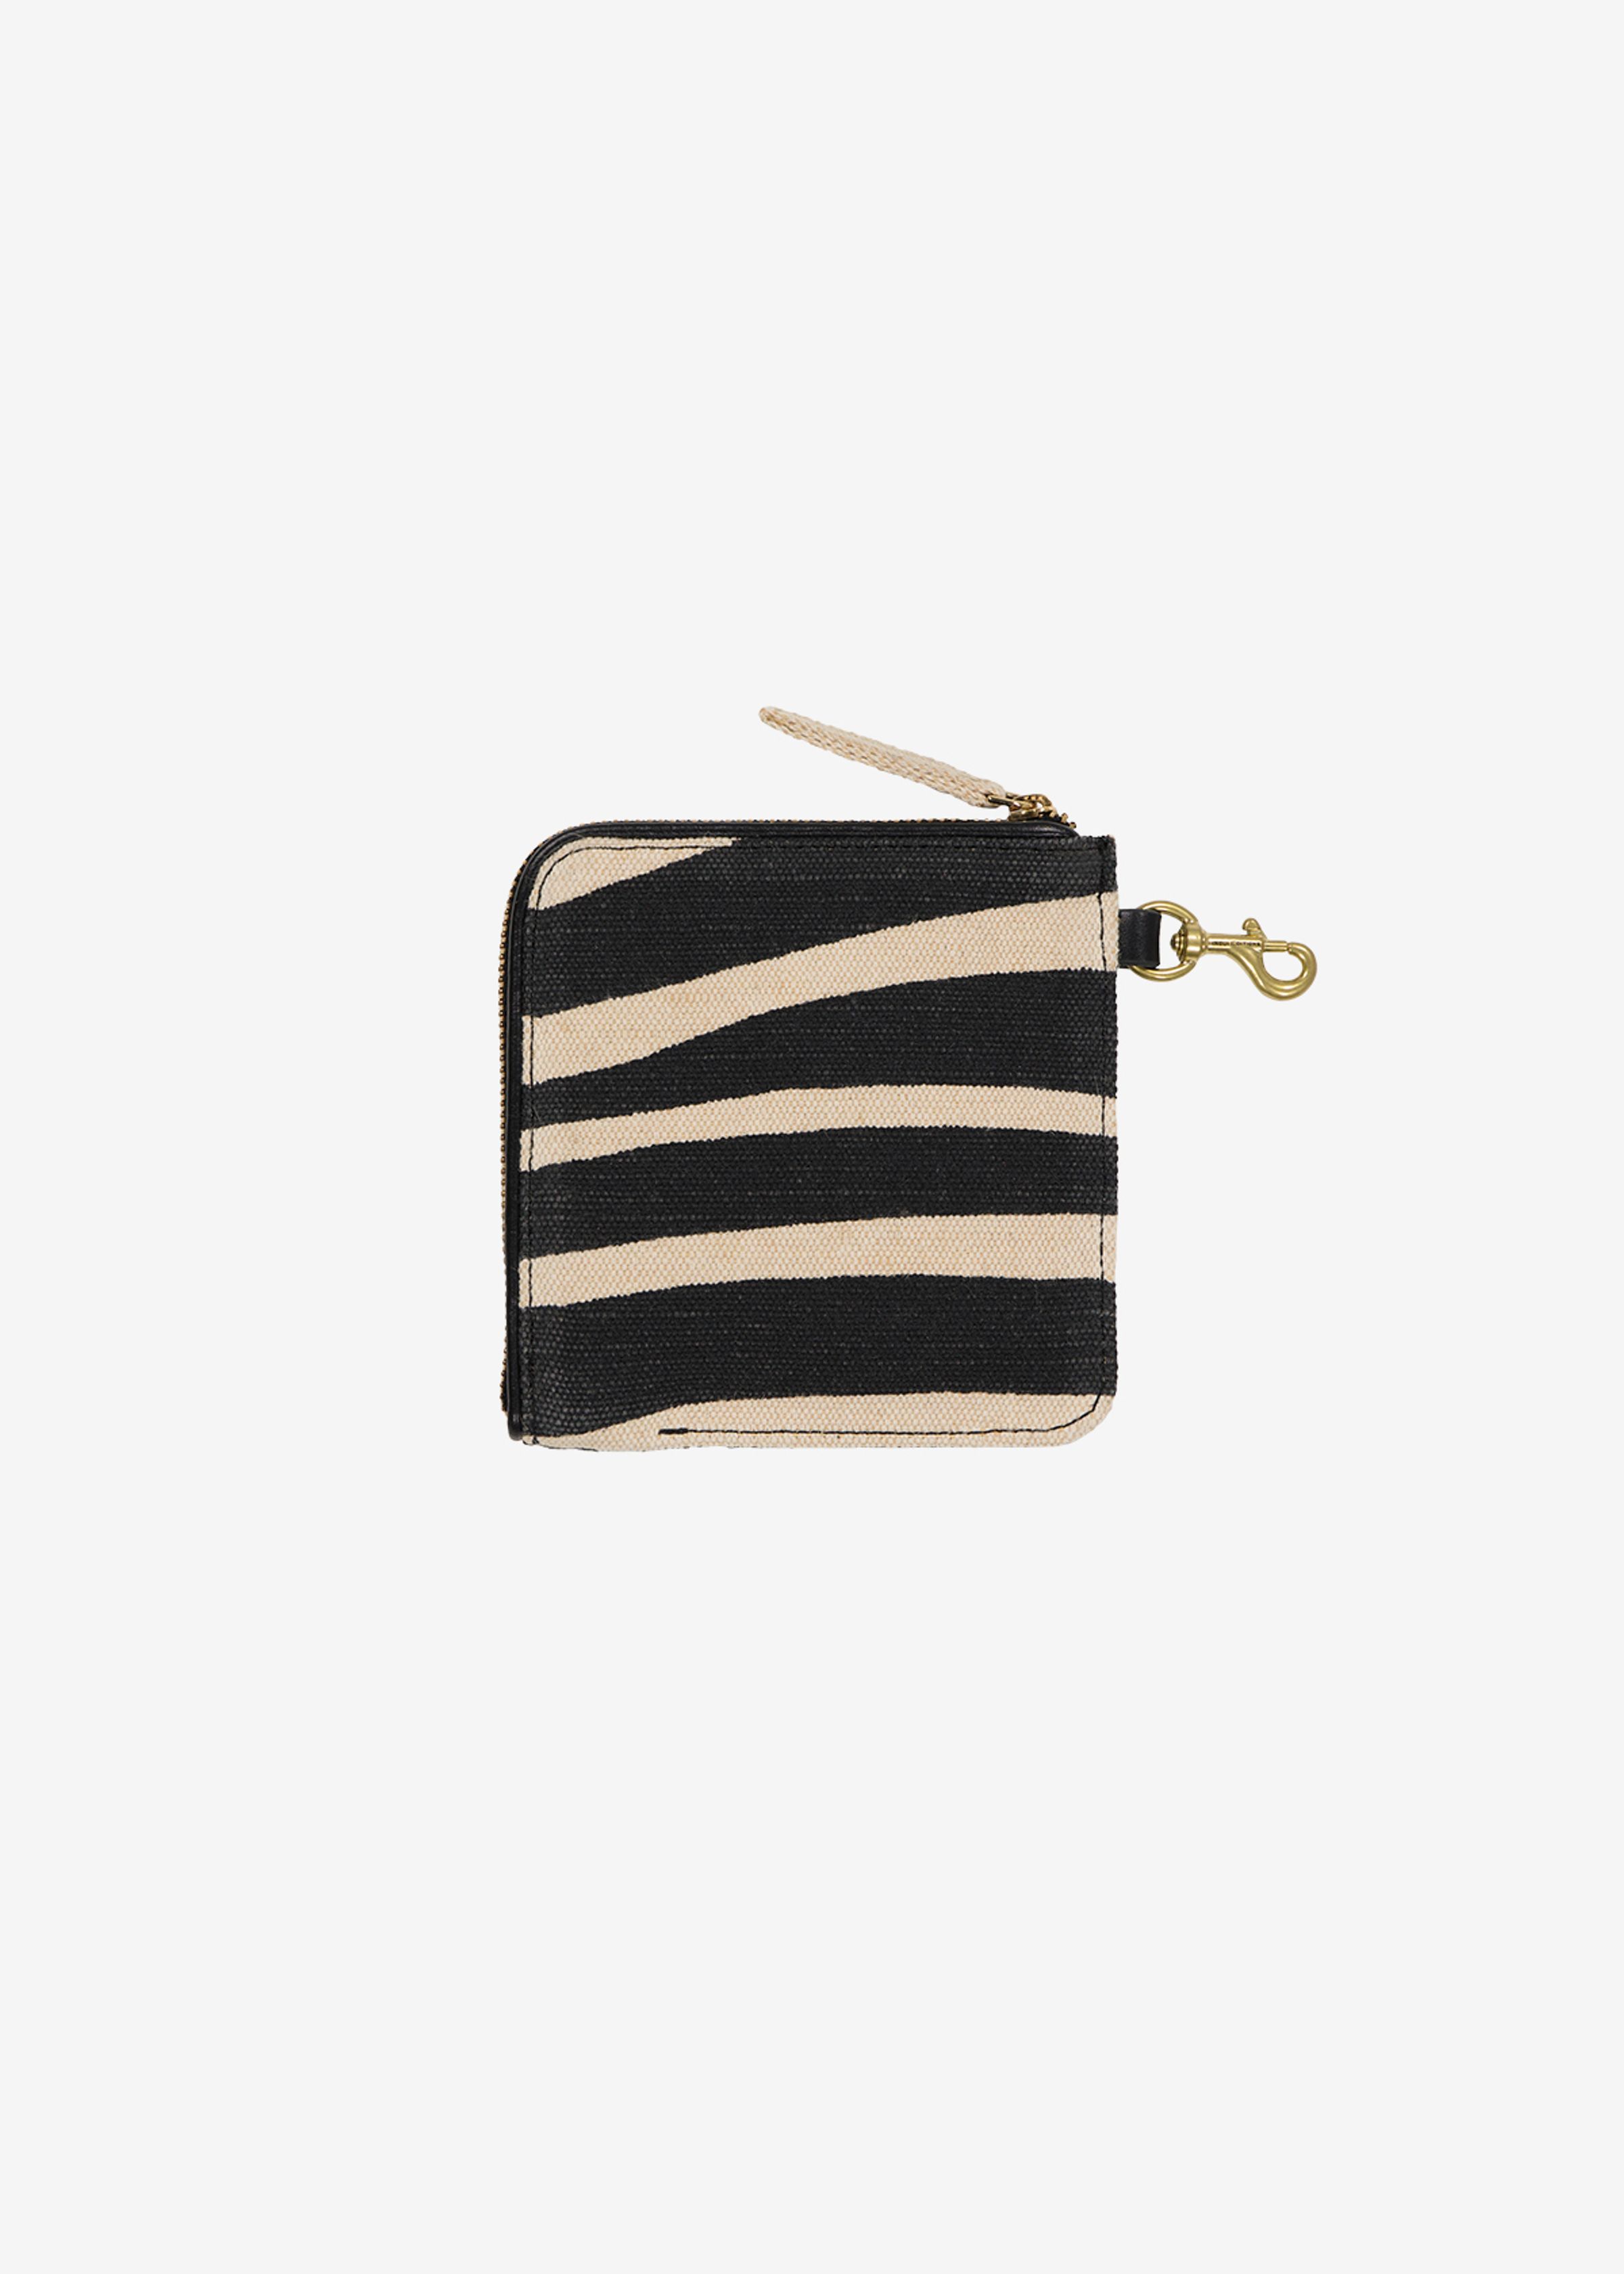 Brieftaschenband - Zebra - Weiß